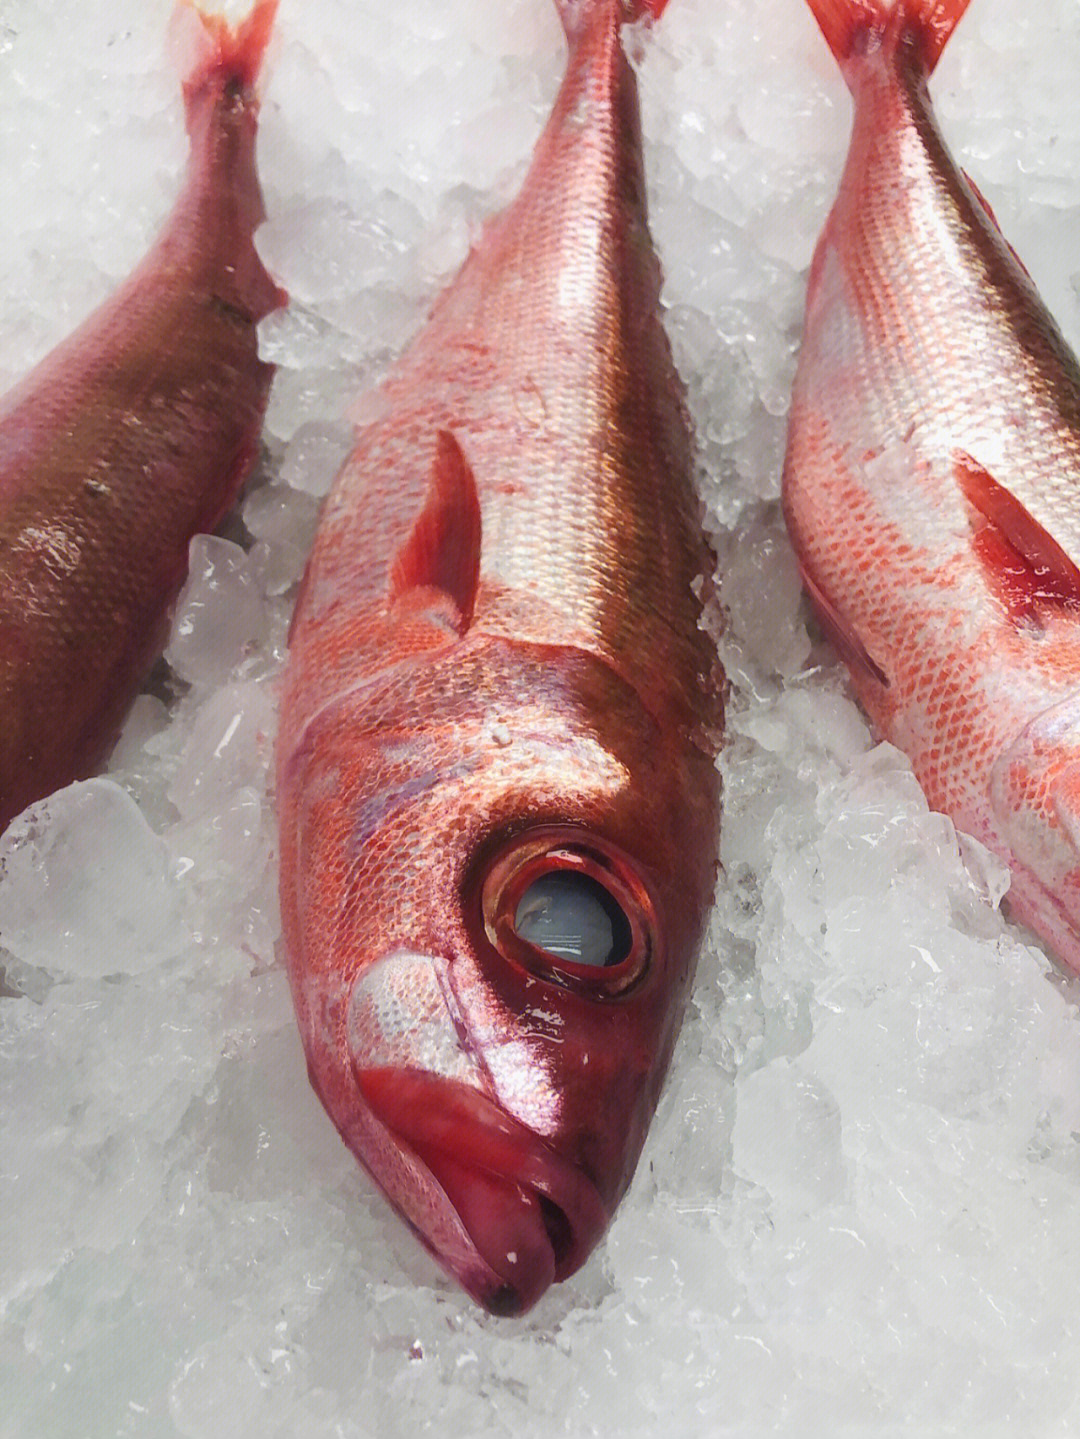 紫鲷鱼(红宝石鱼)刺身极品红身鱼紫鲷是鱼中之王,薄切刺身是考验刀法